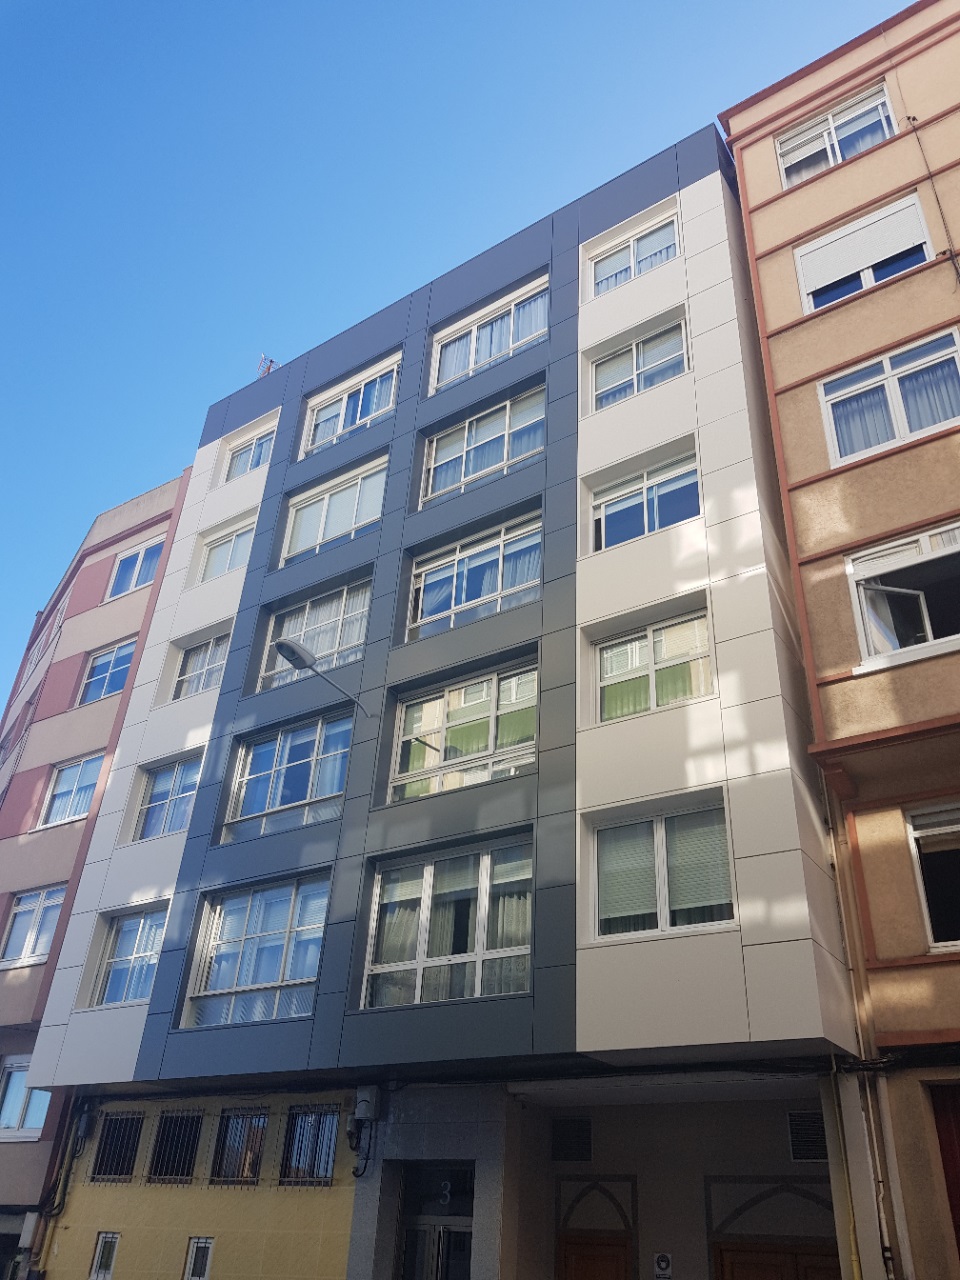 Imagen completa de la noticia Edificio de cinco plantas en A Coruña rehabilitado con fachada ventilada en composite